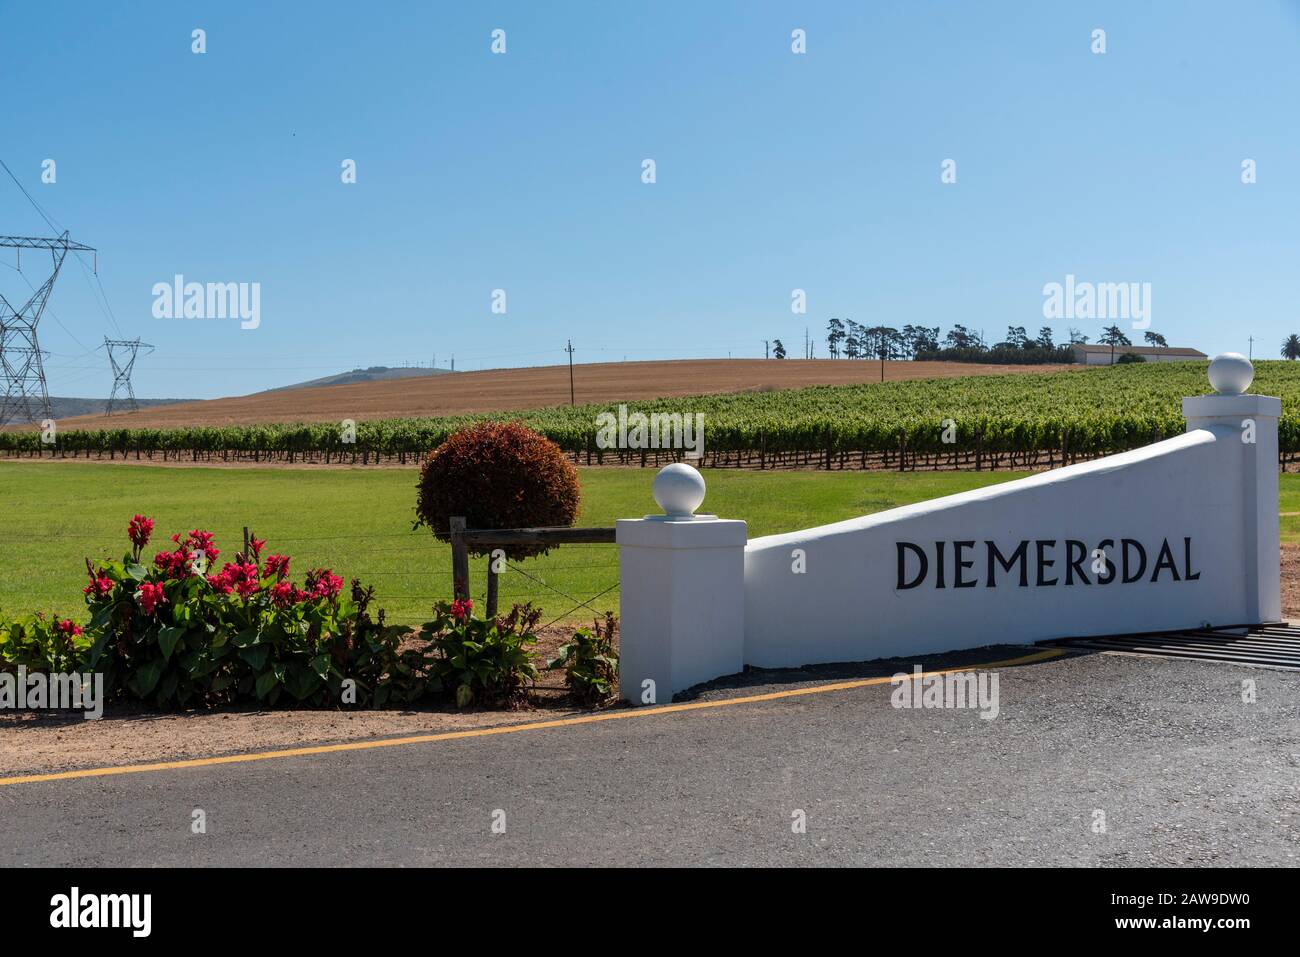 Durbanville, Città Del Capo, Sudafrica. 2019. Uva sulle viti nella regione viticola di Durbanville vicino a Città del Capo, Sud Africa. Cancello d'ingresso. Foto Stock